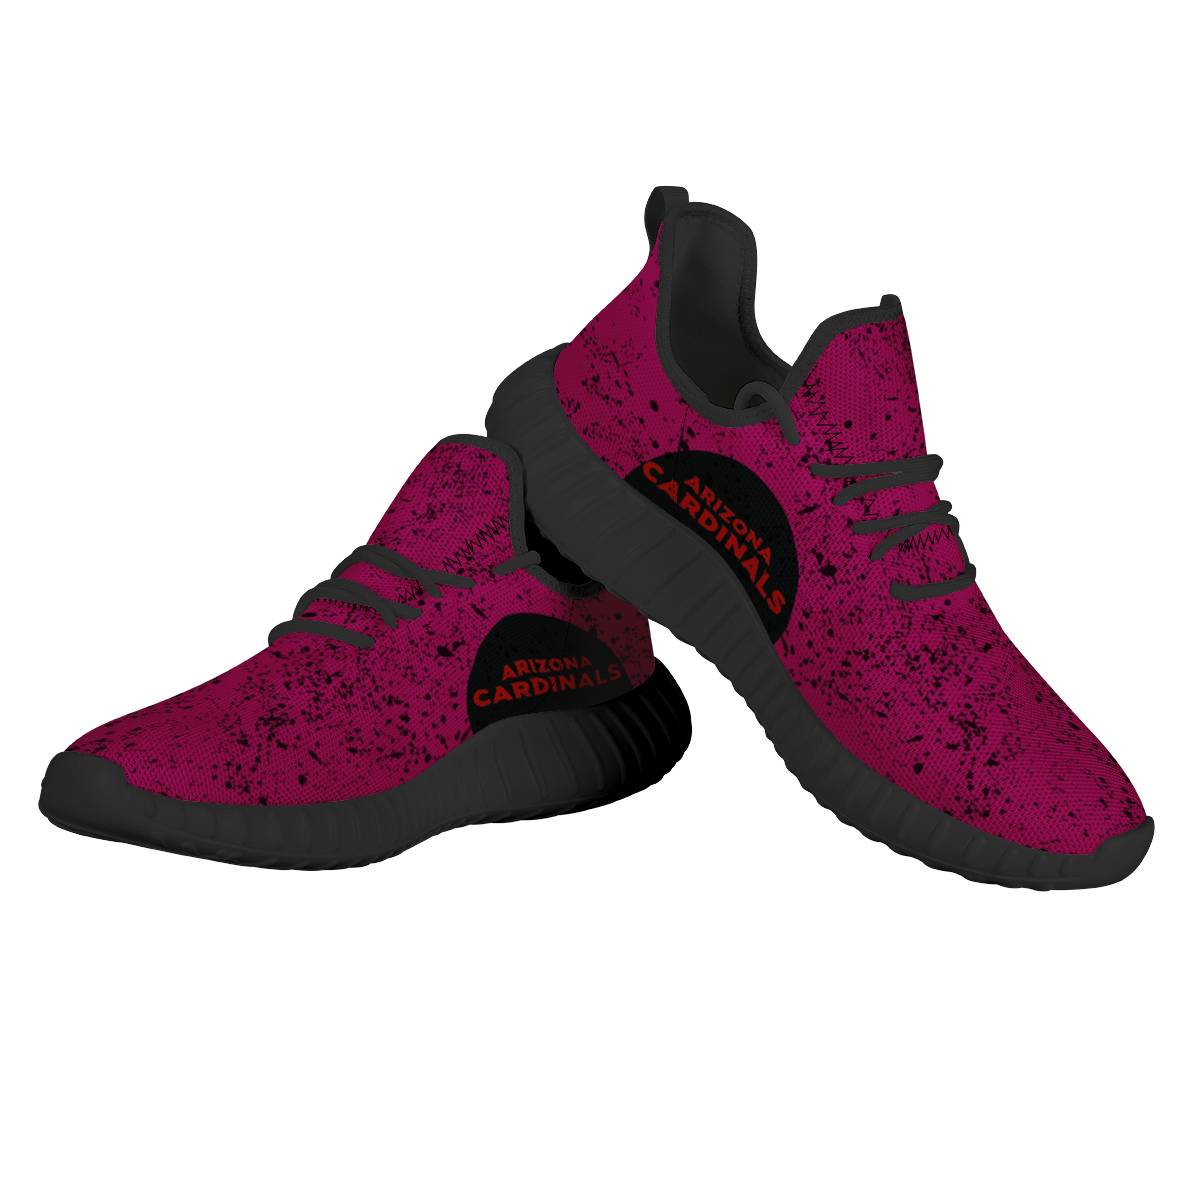 Women's Arizona Cardinals Mesh Knit Sneakers/Shoes 011